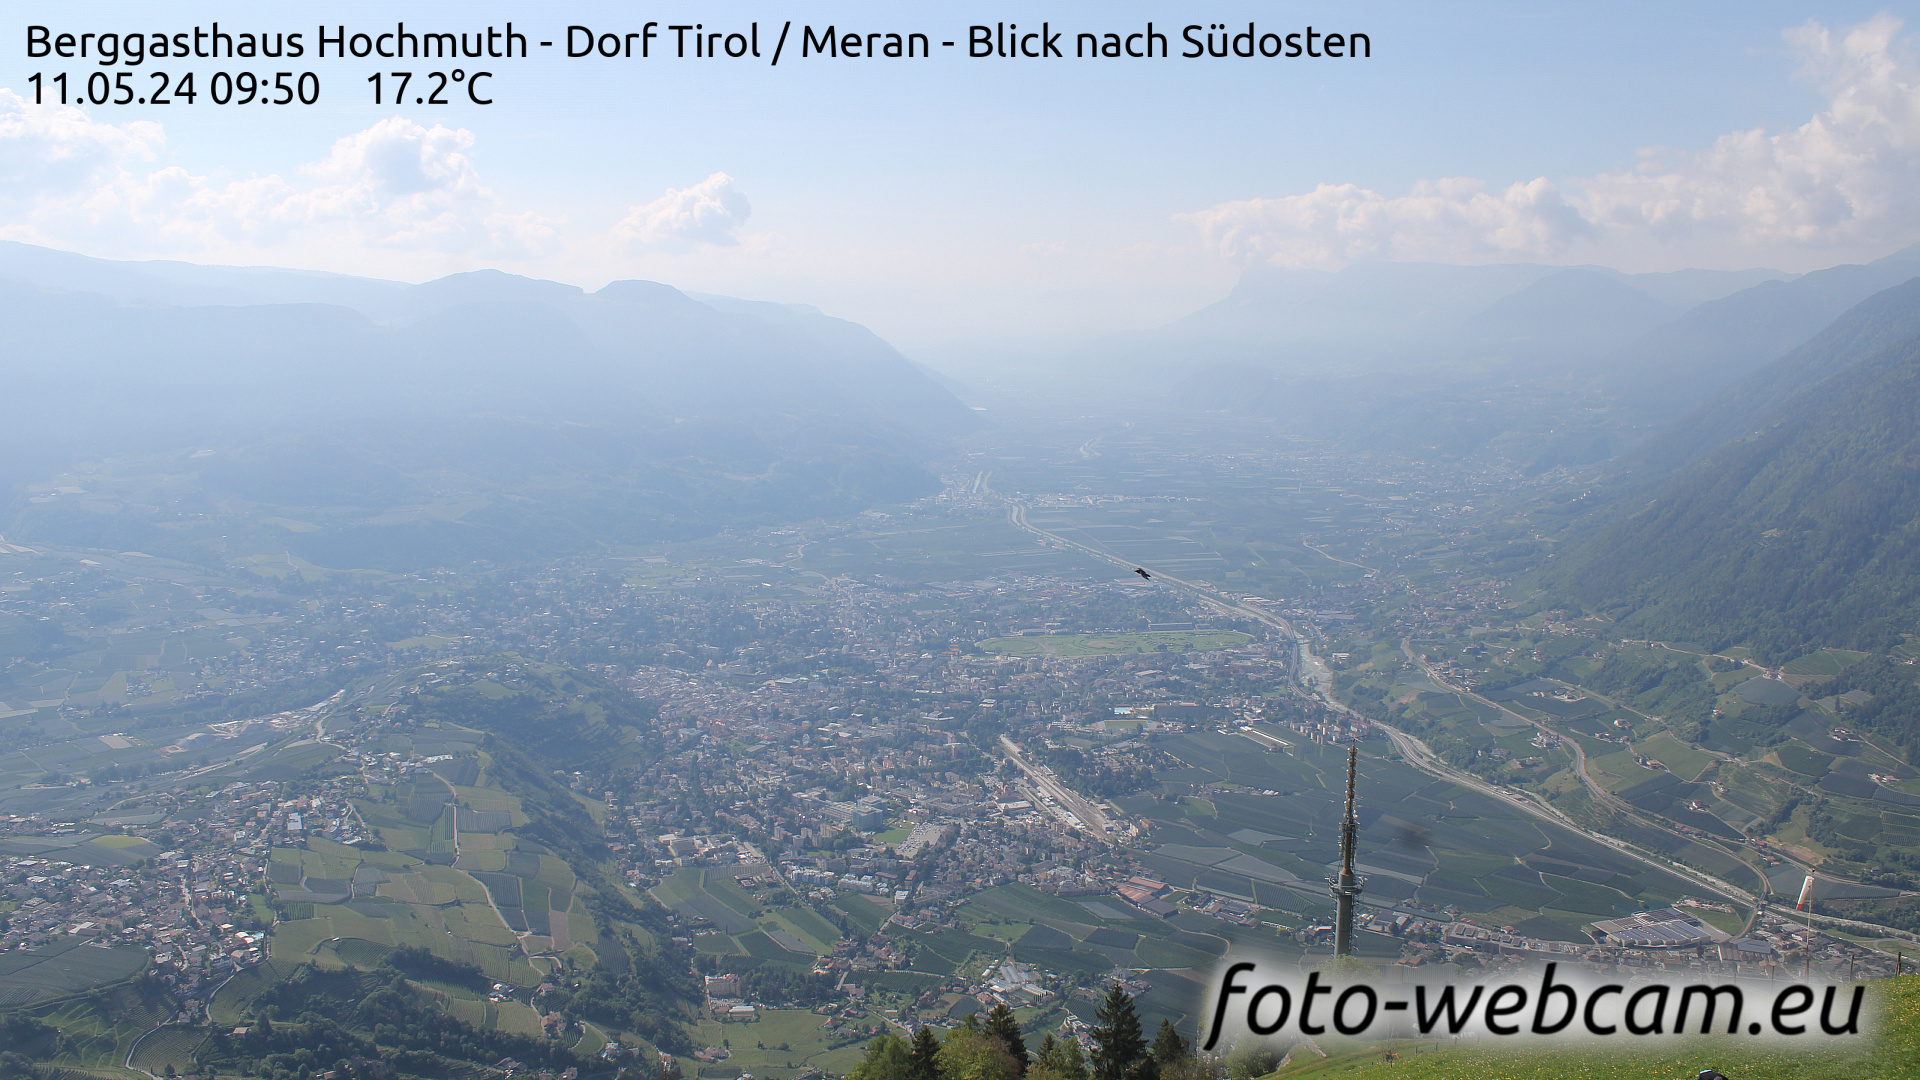 Tirol Wed. 09:56